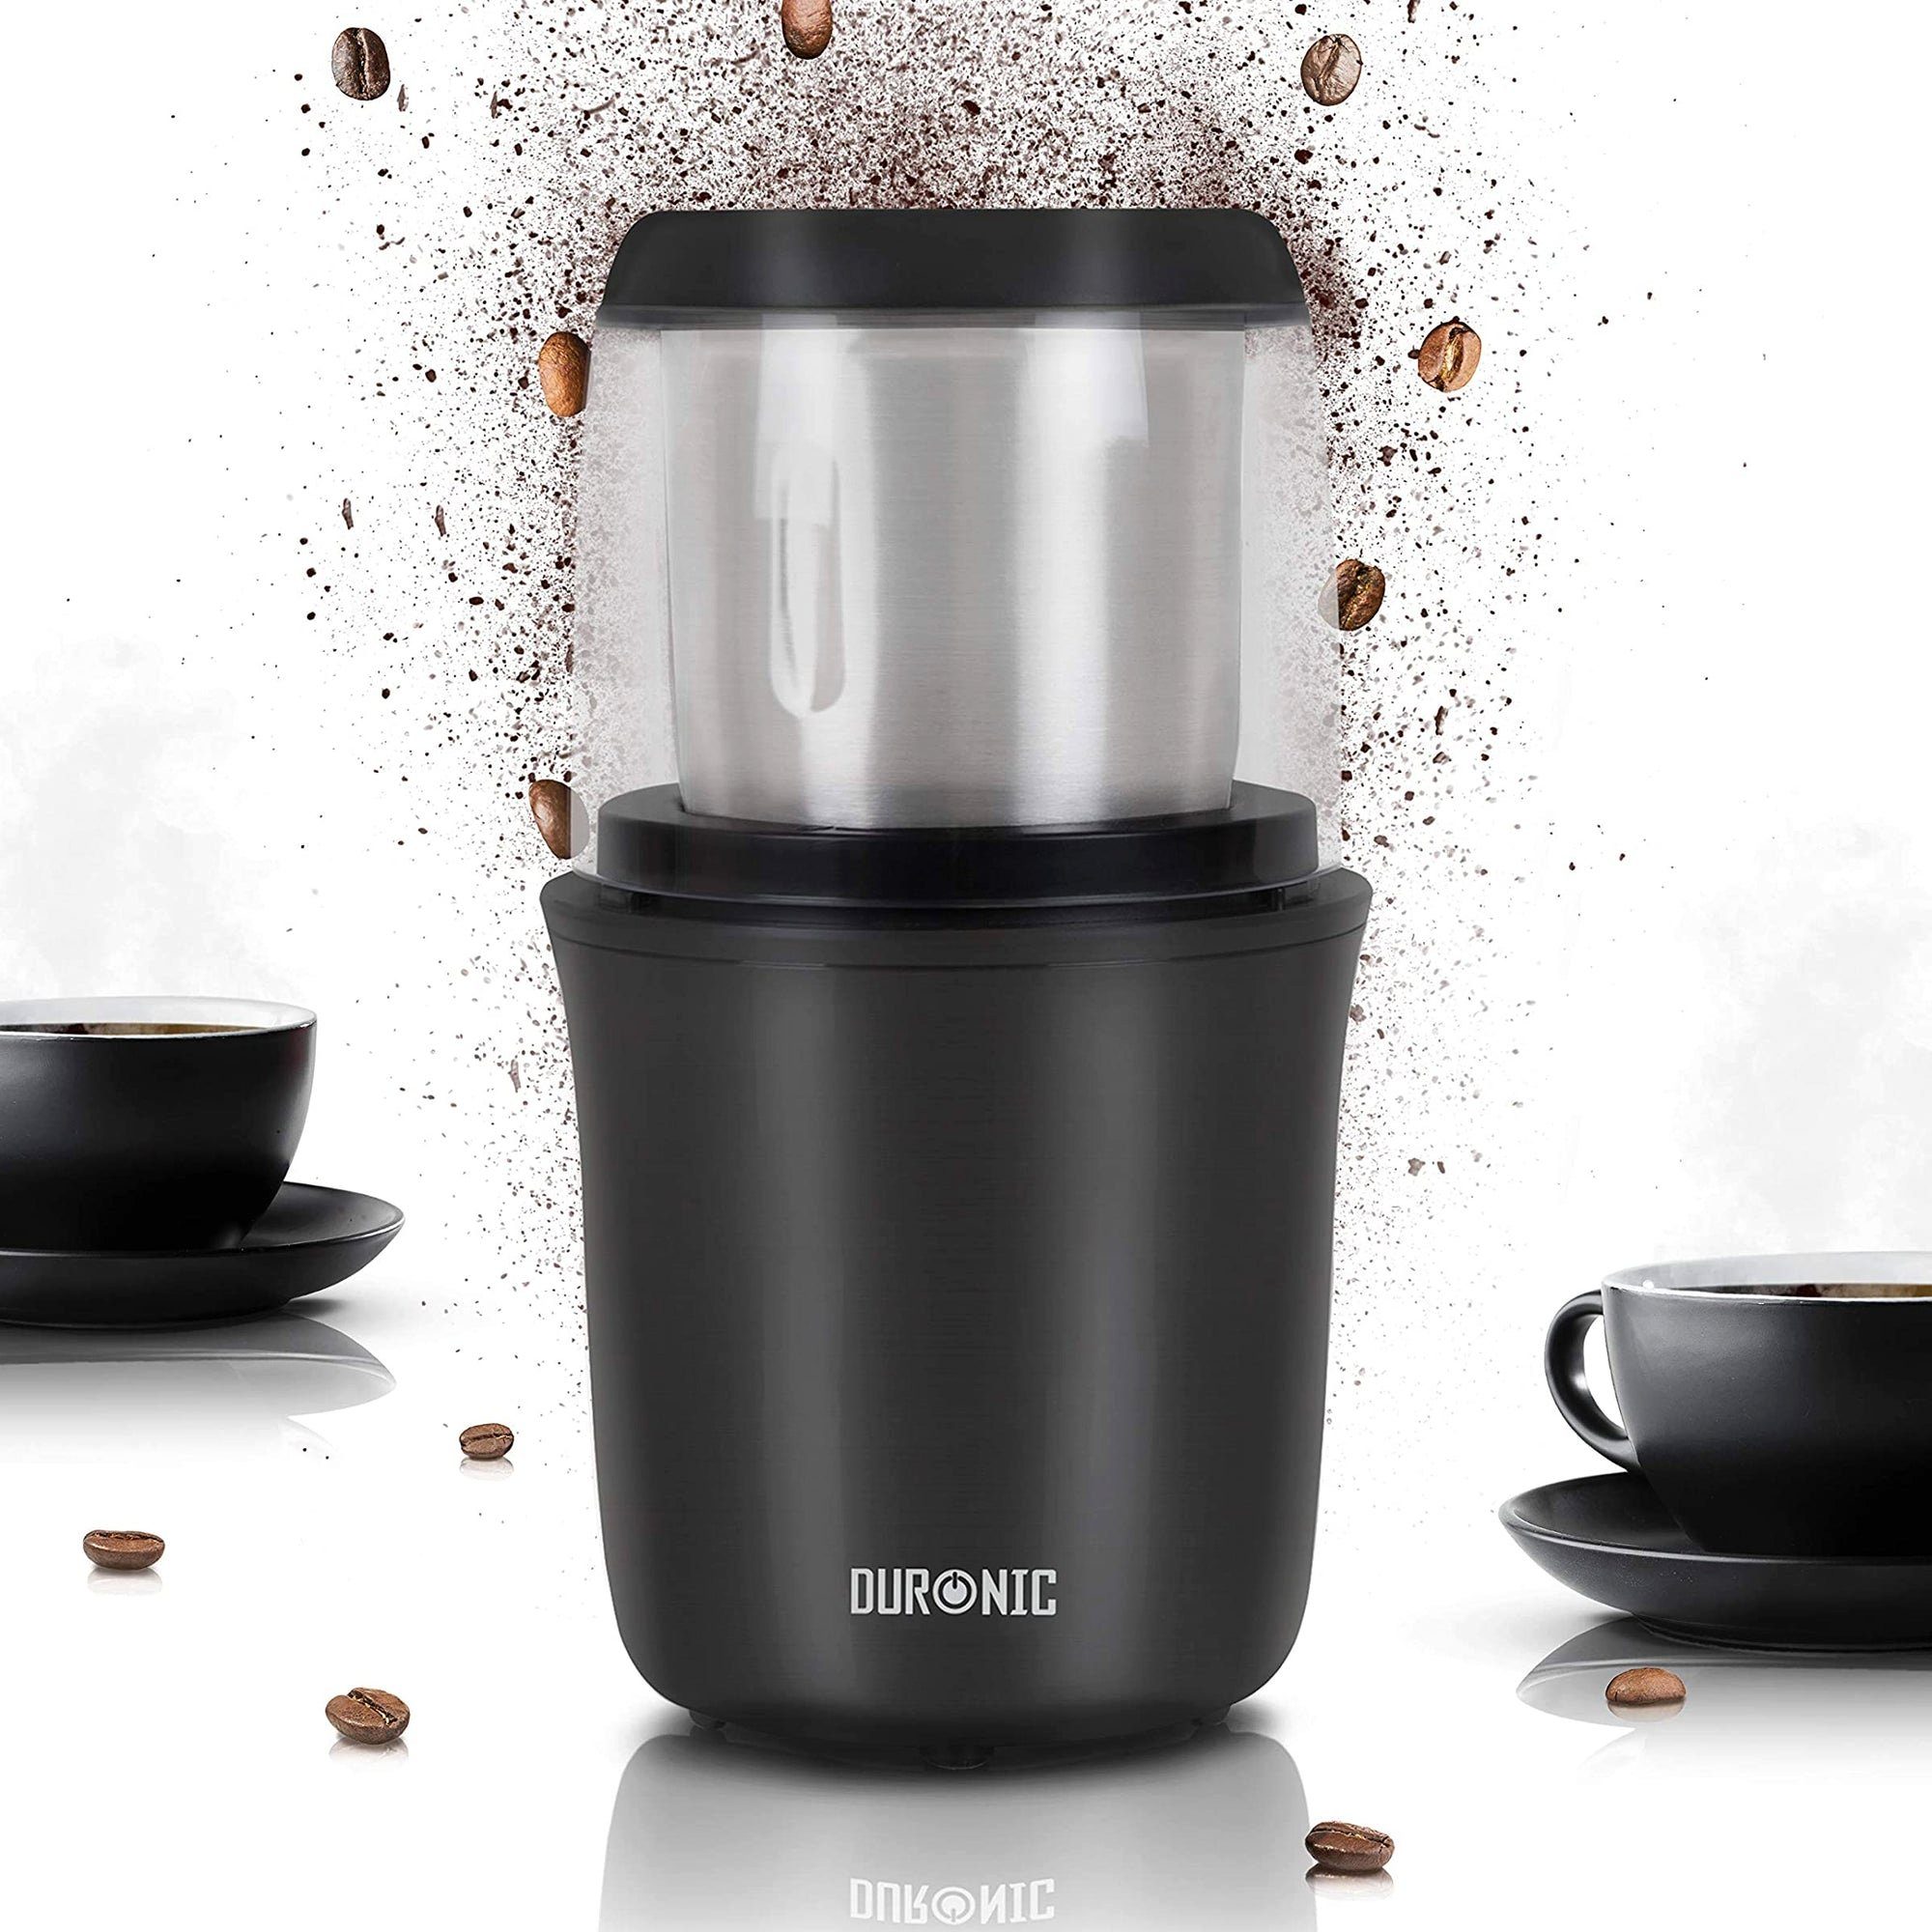 Duronic Kaffeemühle, CG250 Nüsse Kaffeebohnen 250 geröstet mit für mit 75g Touch-Sensor, Fassungsvermögen Tassen, Propellermühle, 12 Gewürzmühle Für Kaffeemühle Kaffee Gewürze Edelstahlklingen, Elektrische W